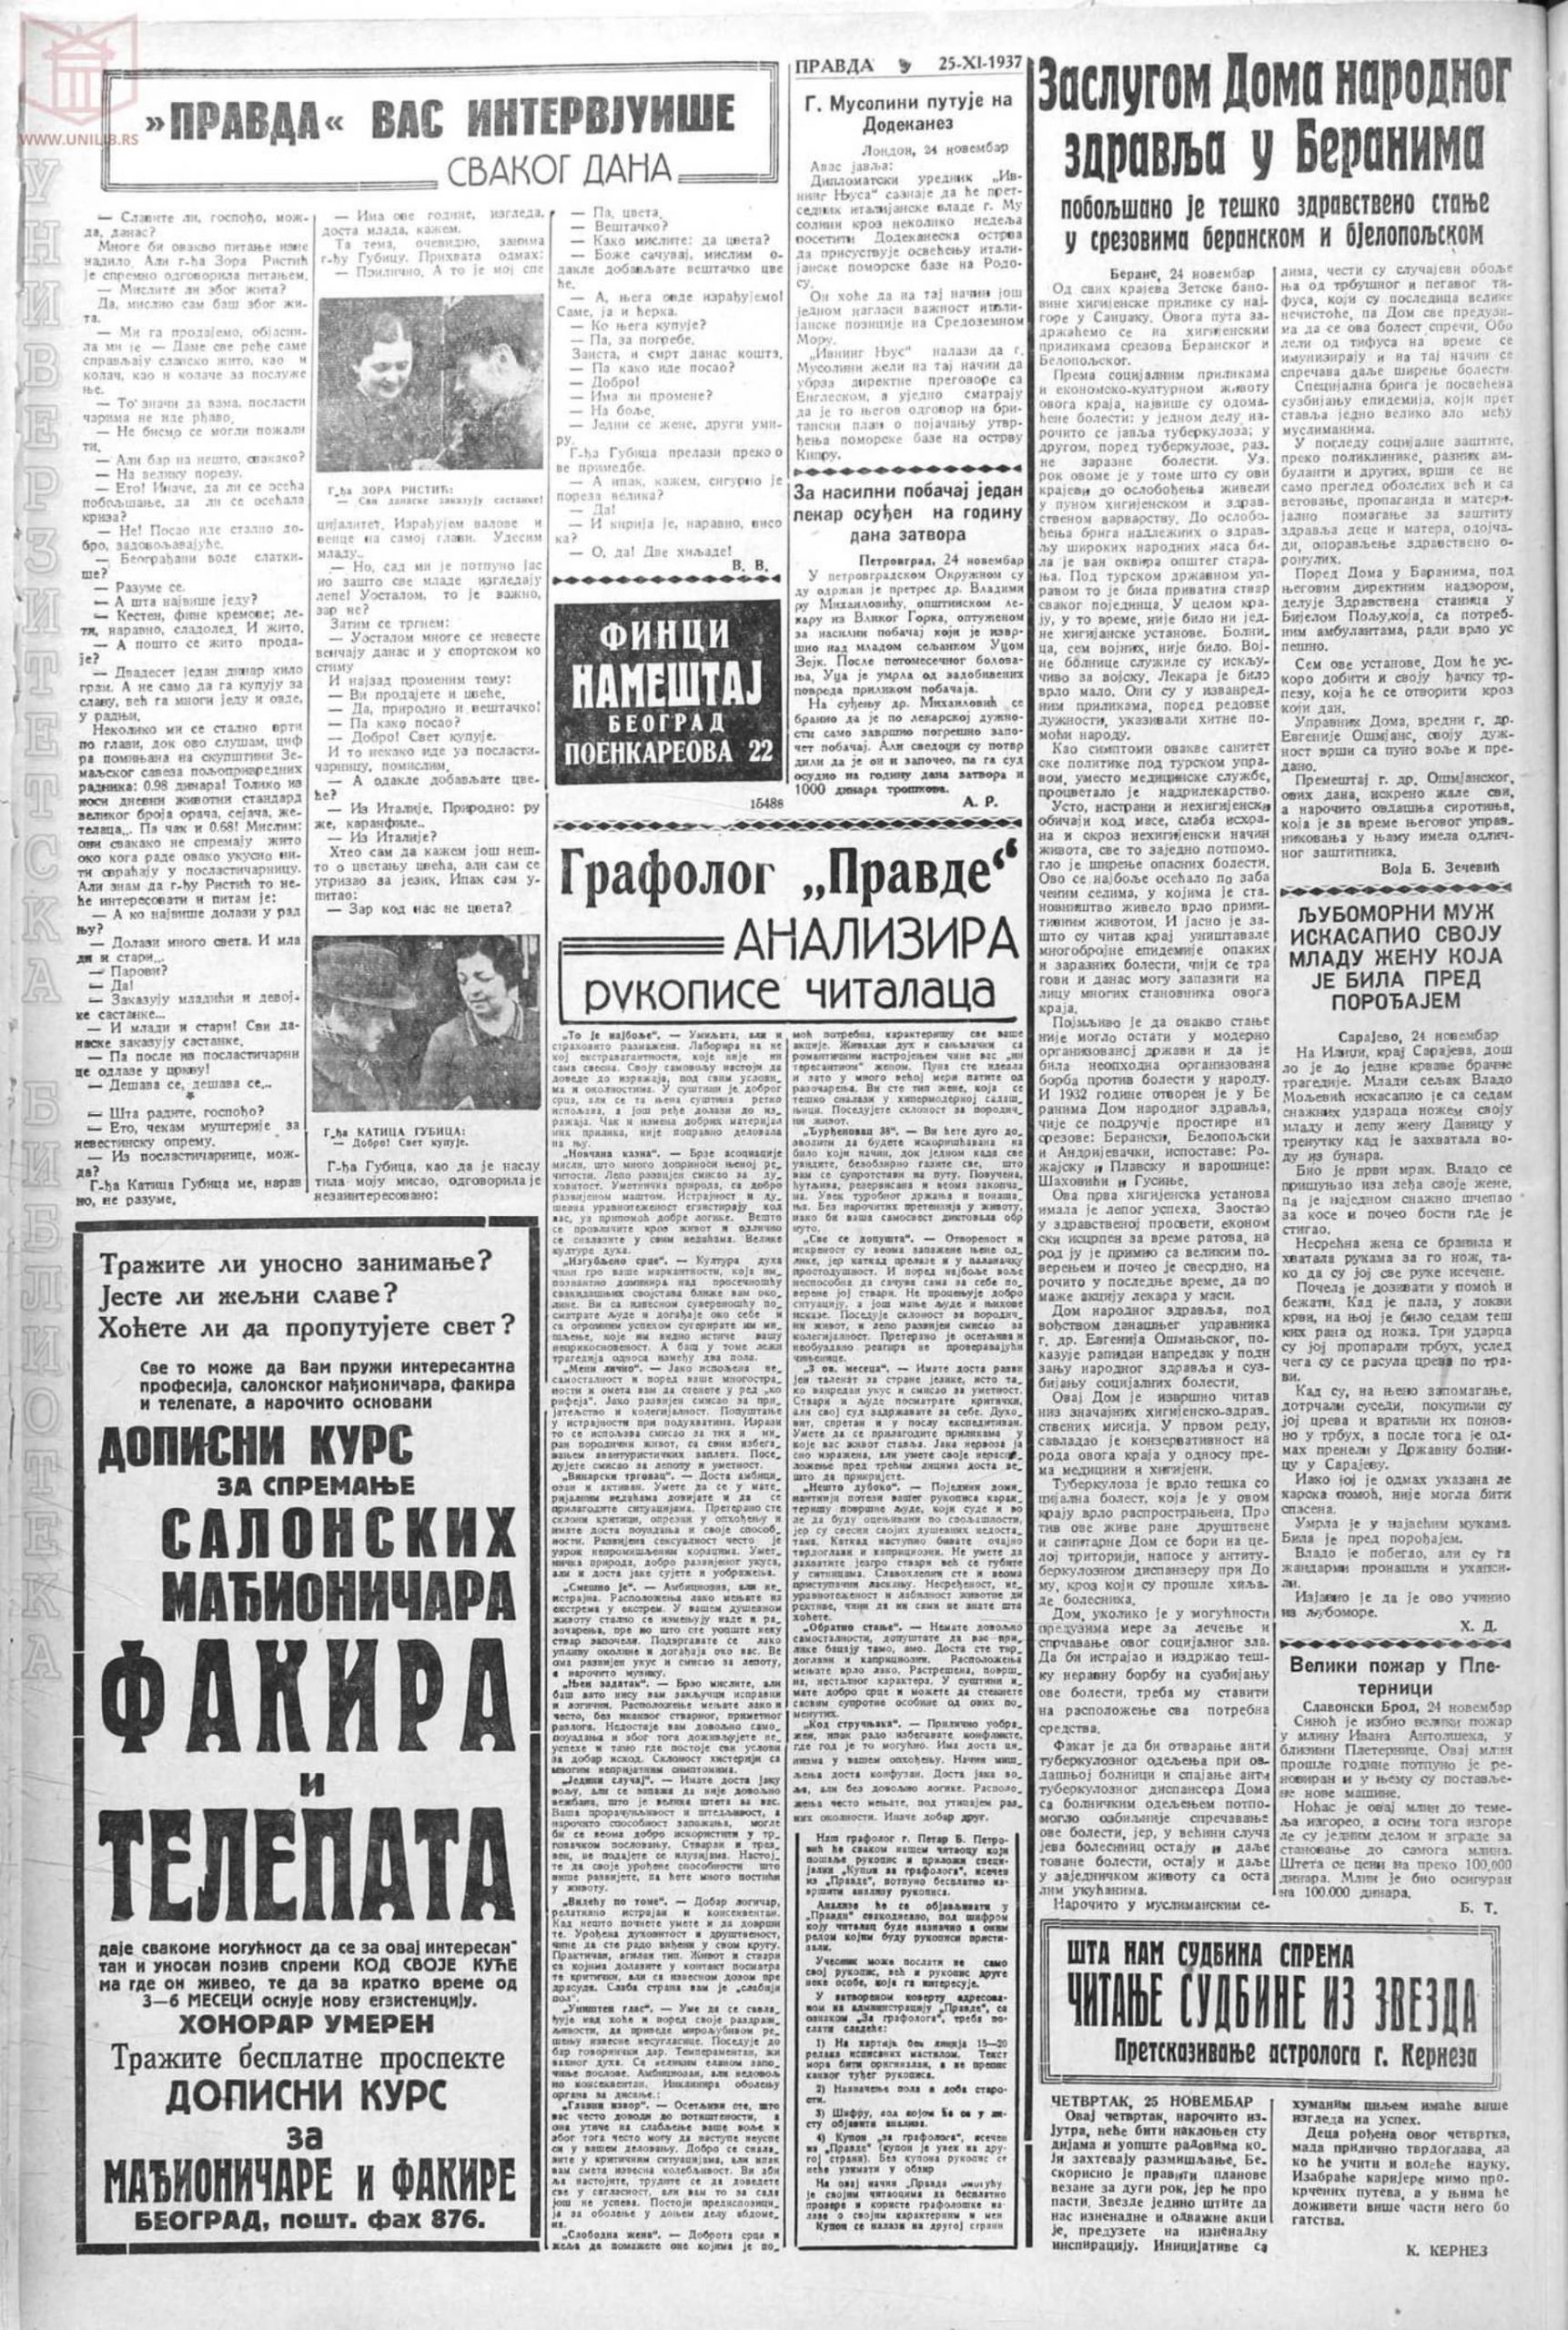 Pravda 25.11.1937 p12-1